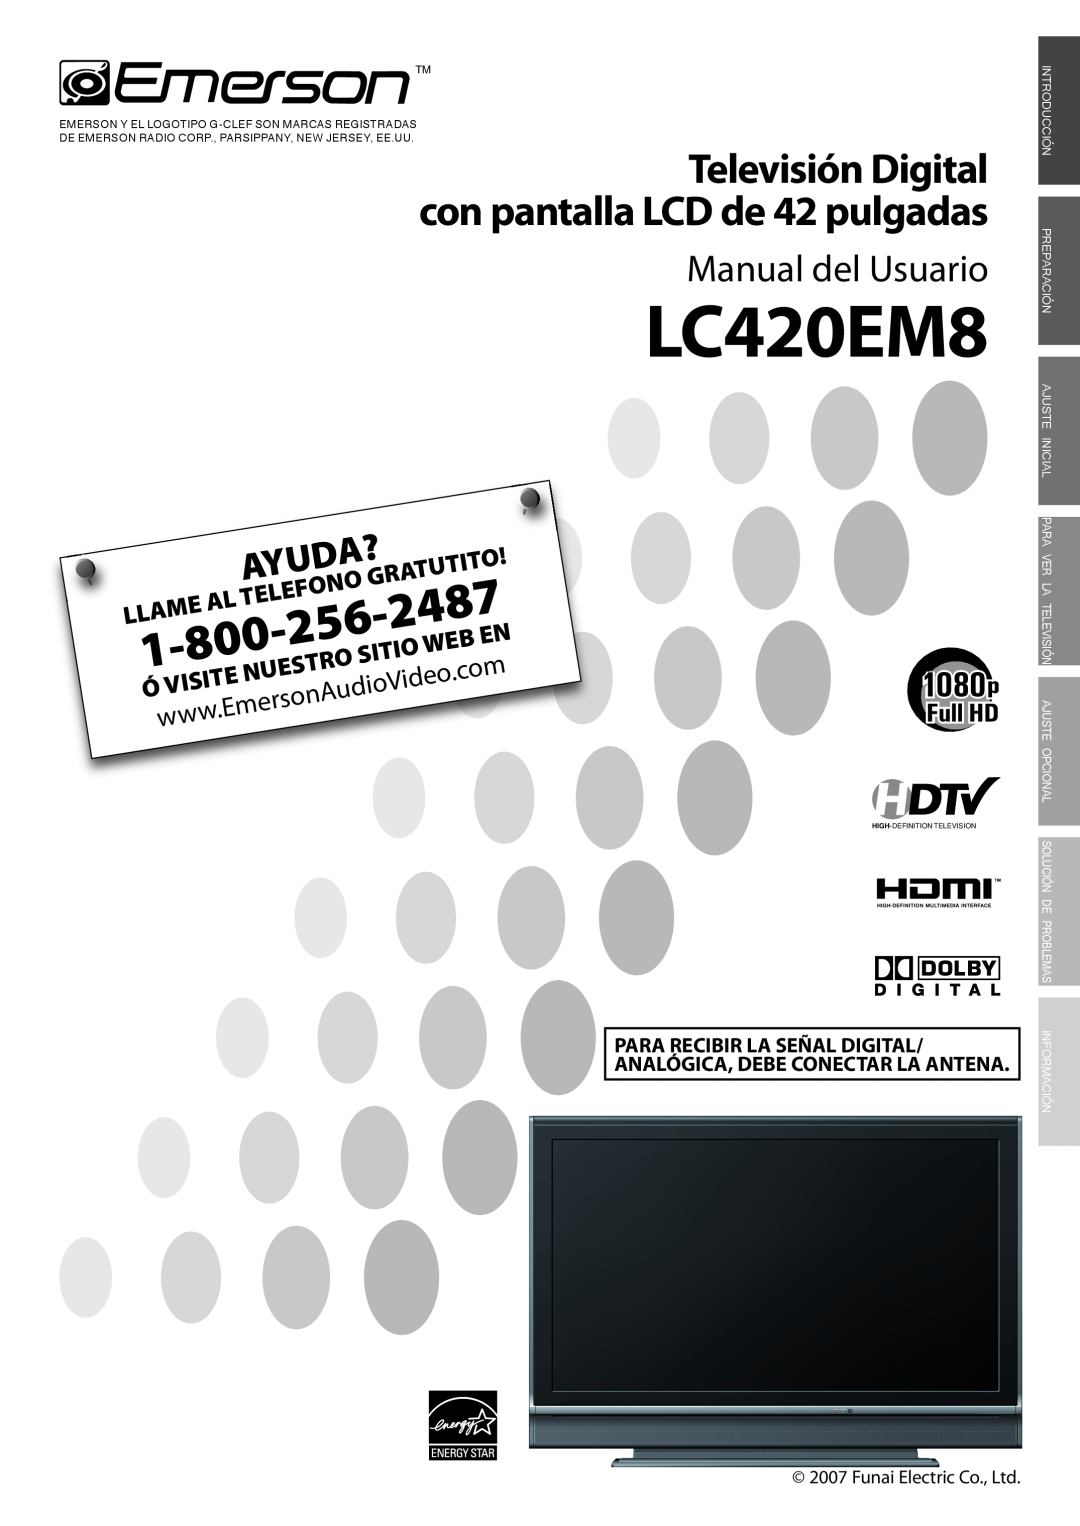 Emerson LC420EM8 owner manual Manual del Usuario, Tutito, Telefono, Sitio, Óvisite, 2487, Ayuda?, Llame, Nuestro 